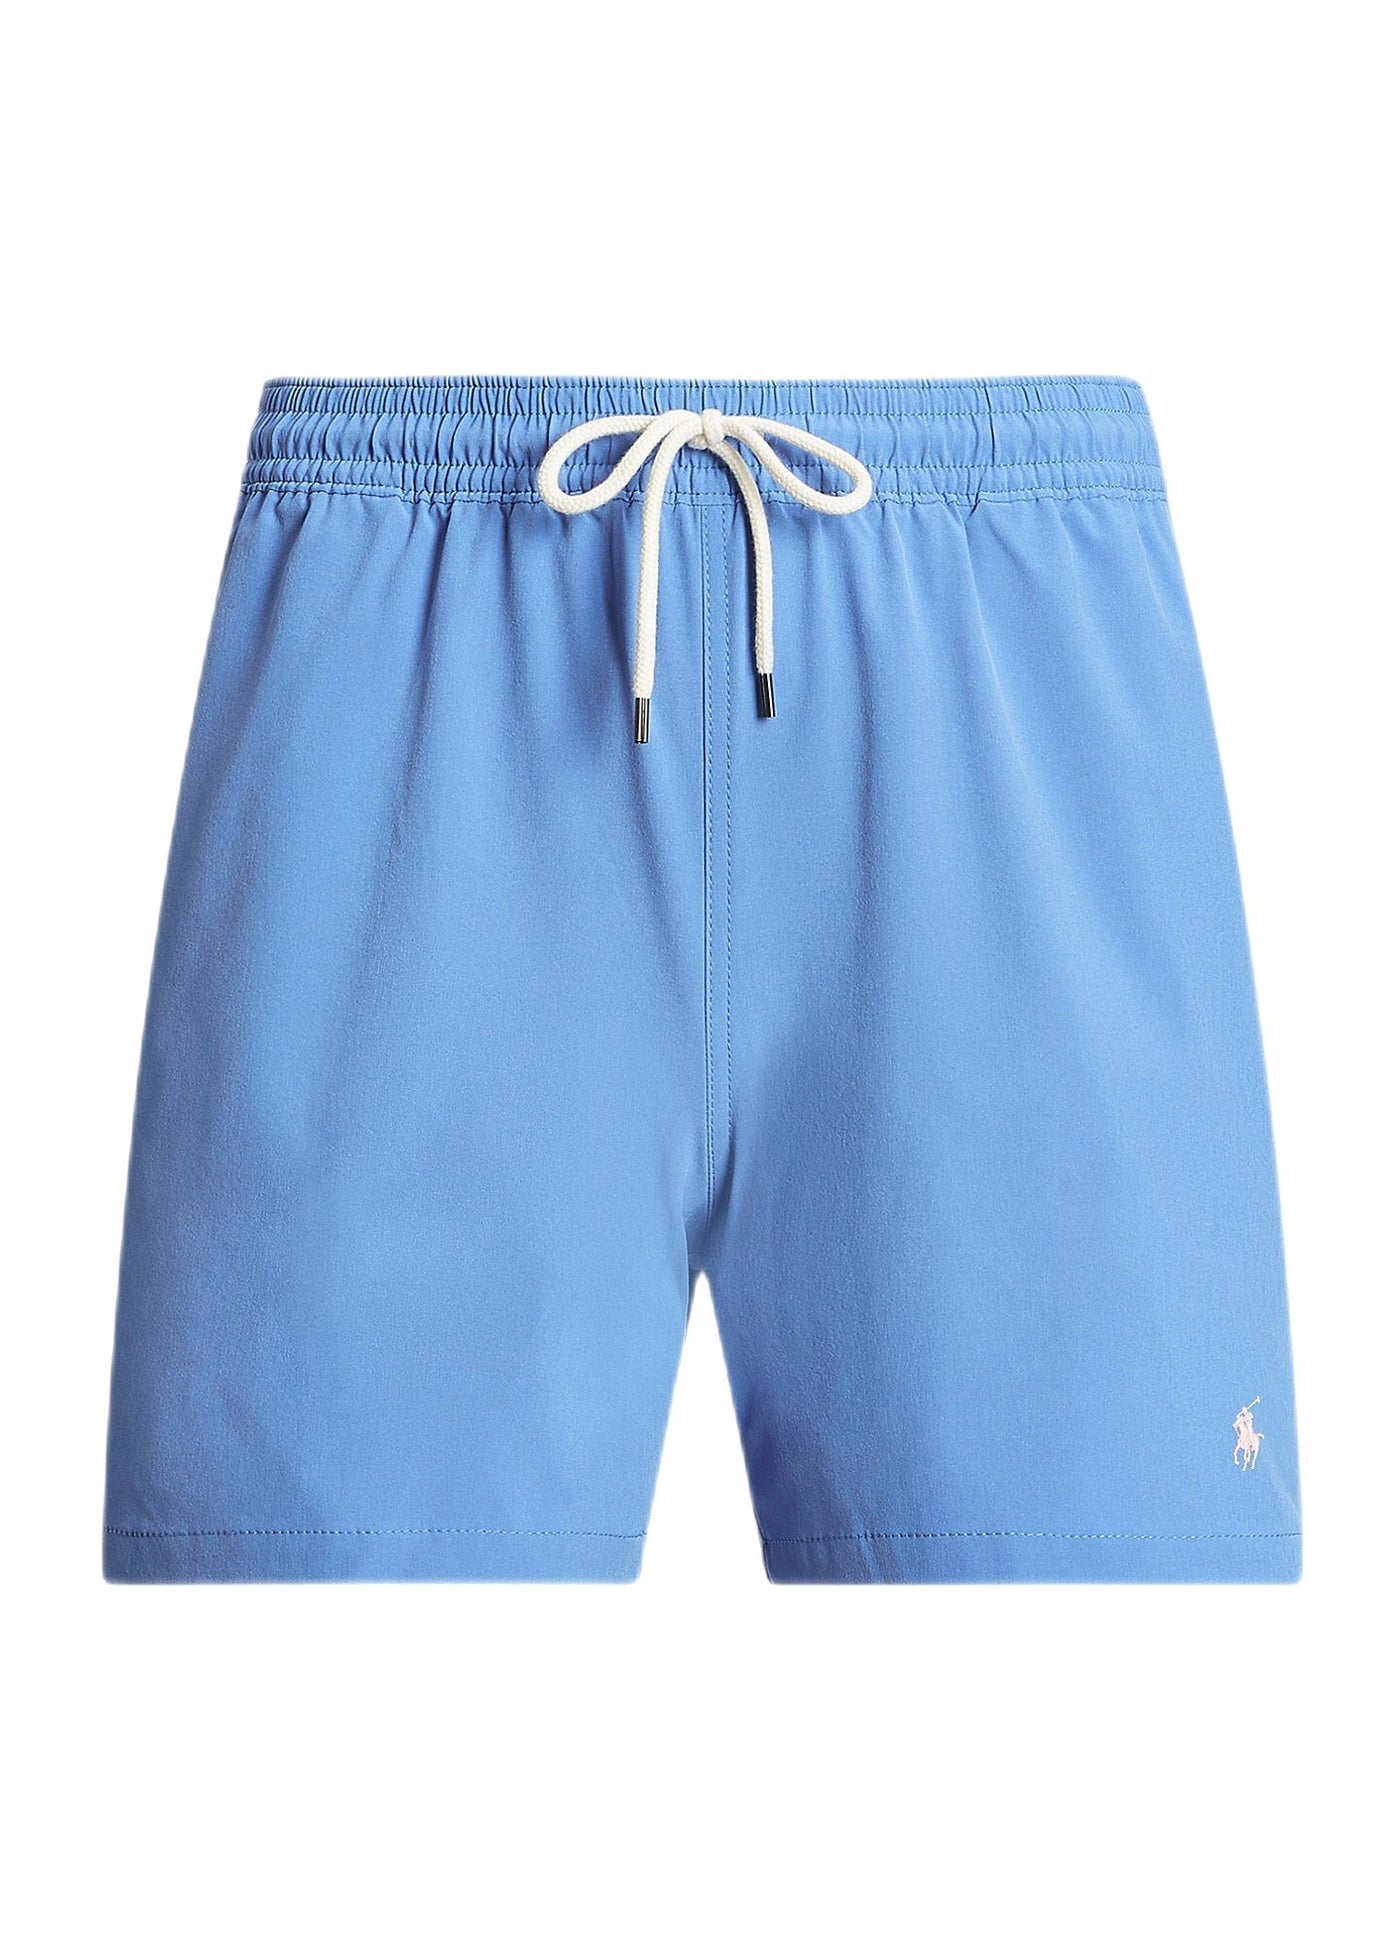 Polo Ralph Lauren - Short de bain Traveler classique New England Blue - Lothaire